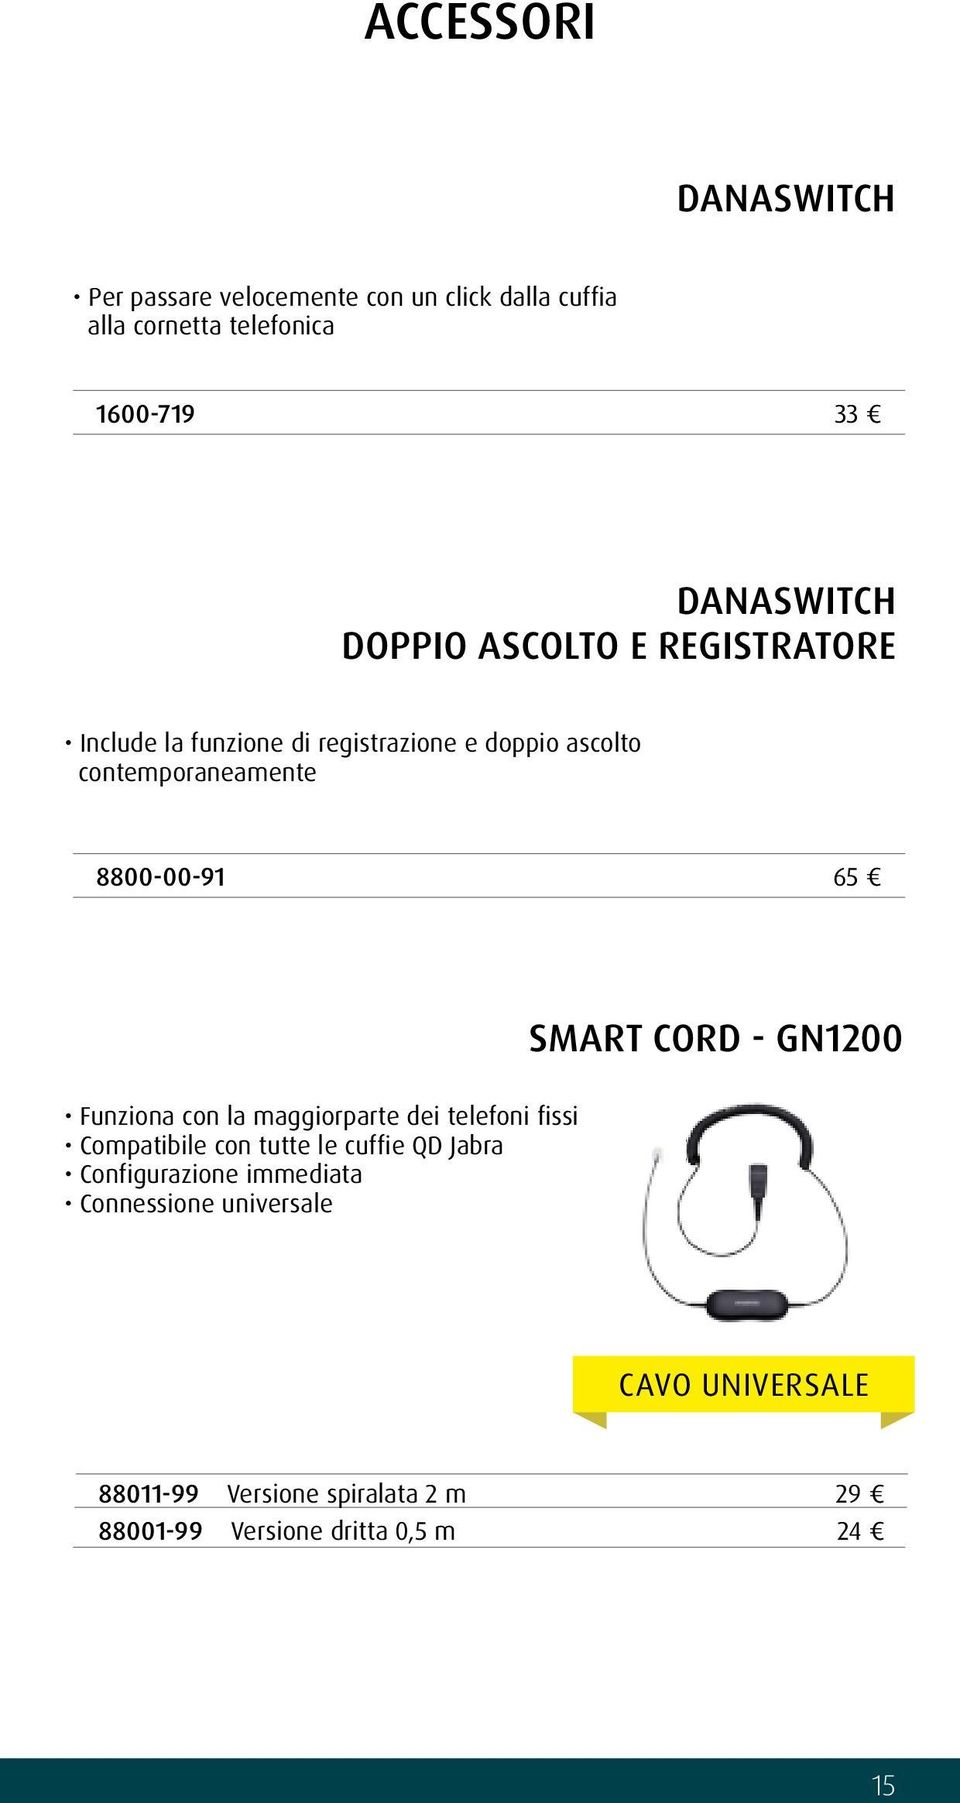 SMART CORD - GN1200 Funziona con la maggiorparte dei telefoni fissi Compatibile con tutte le cuffie QD Jabra